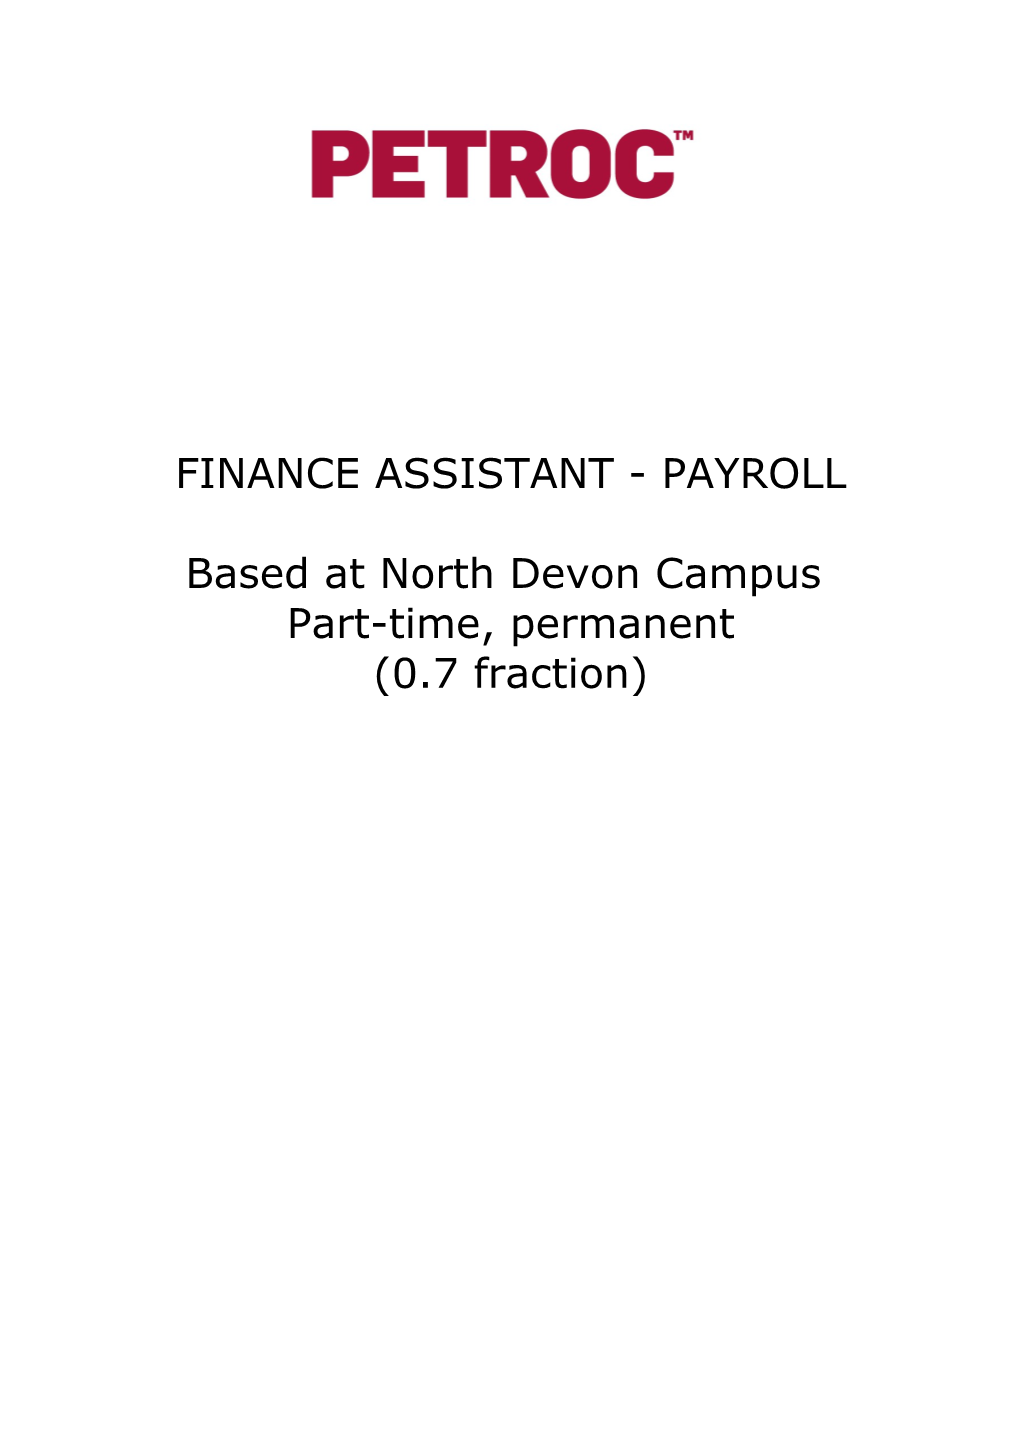 Based at North Devon Campus